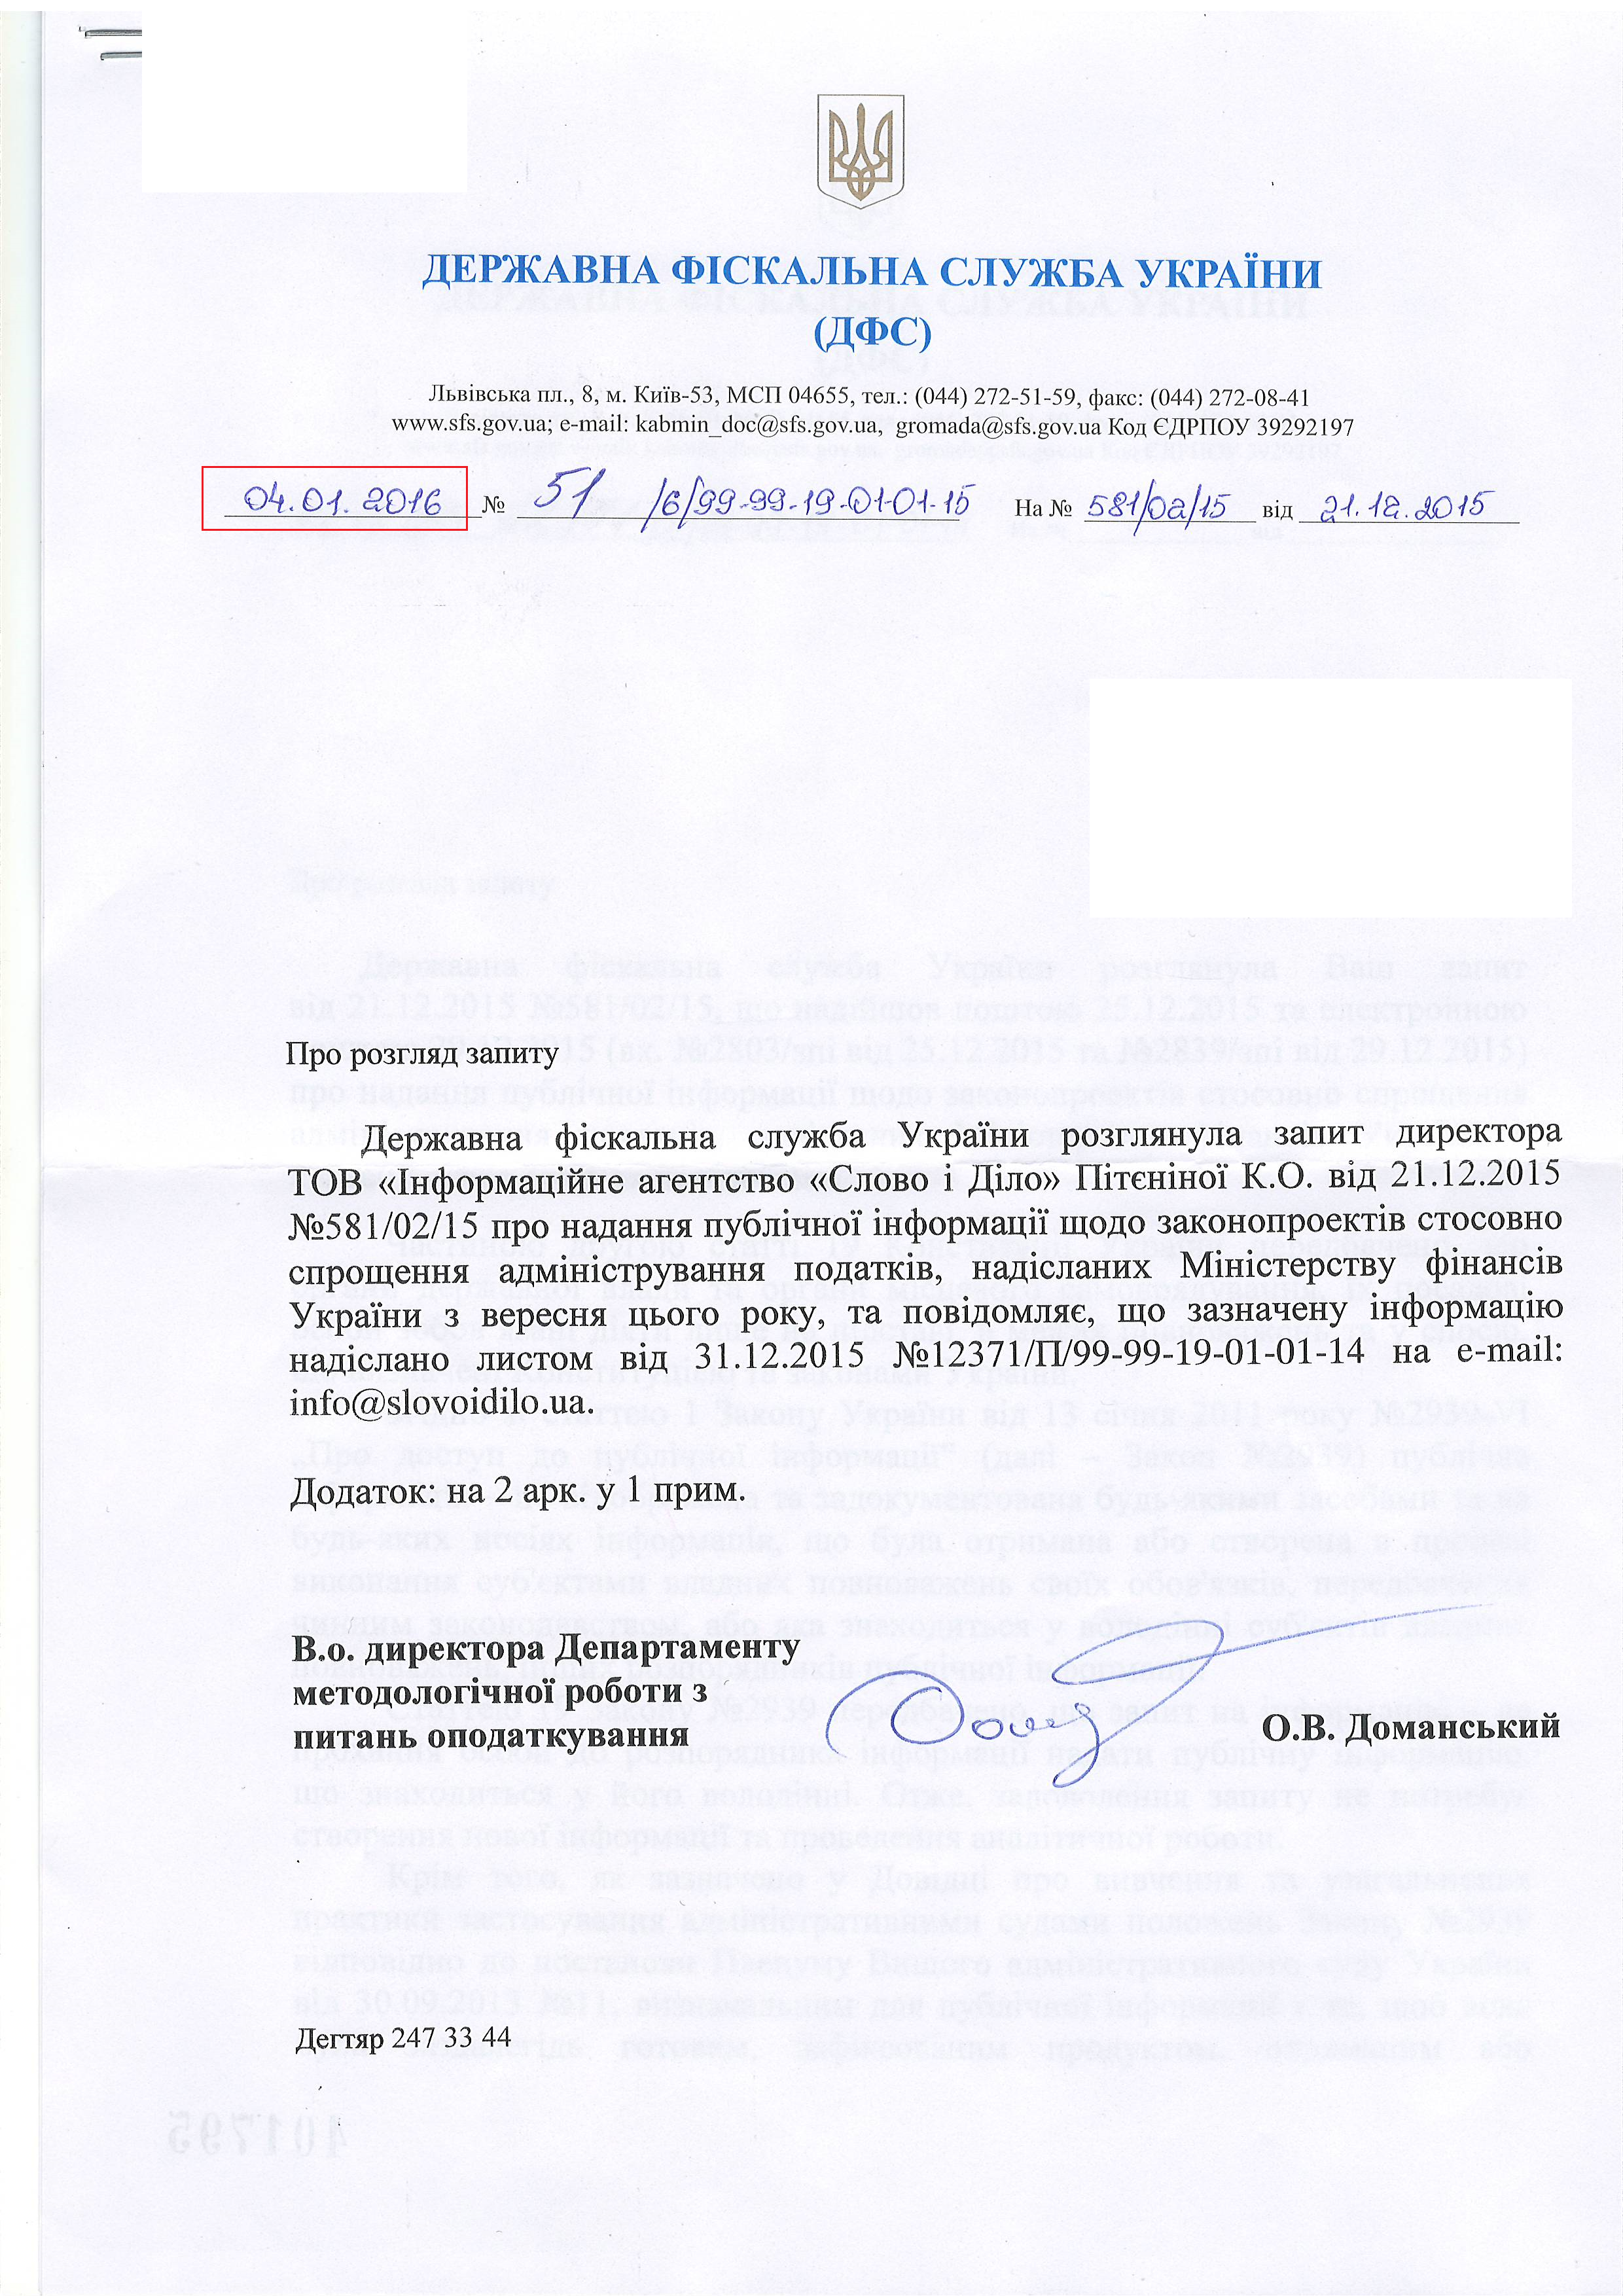 Лист Державної фіскальної служби України від 4 січня 2015 року